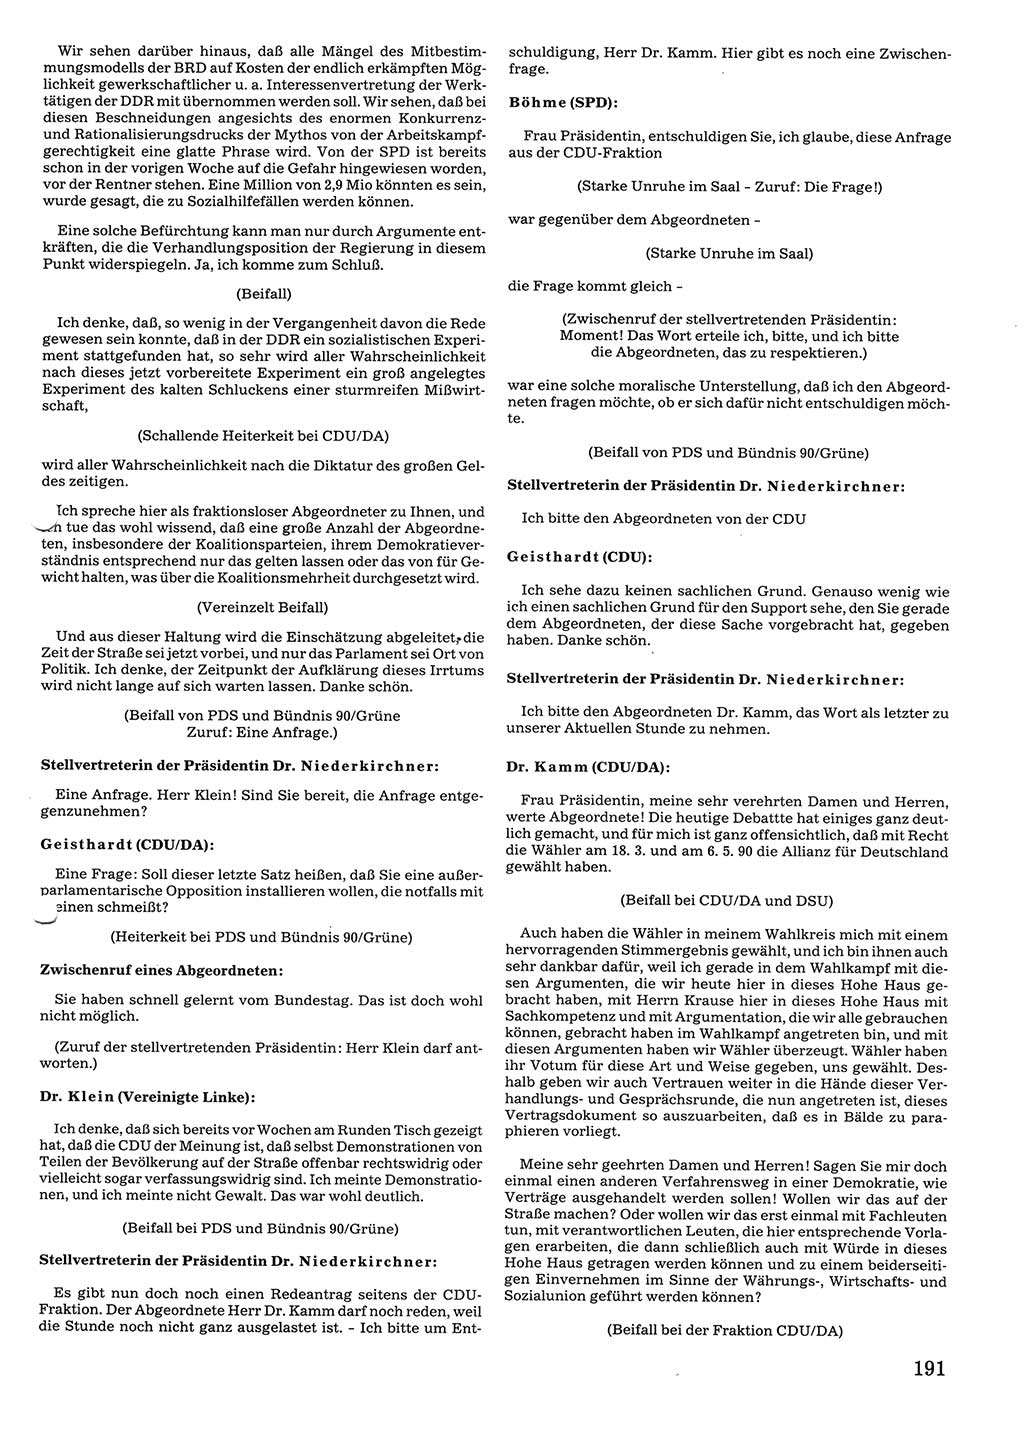 Tagungen der Volkskammer (VK) der Deutschen Demokratischen Republik (DDR), 10. Wahlperiode 1990, Seite 191 (VK. DDR 10. WP. 1990, Prot. Tg. 1-38, 5.4.-2.10.1990, S. 191)